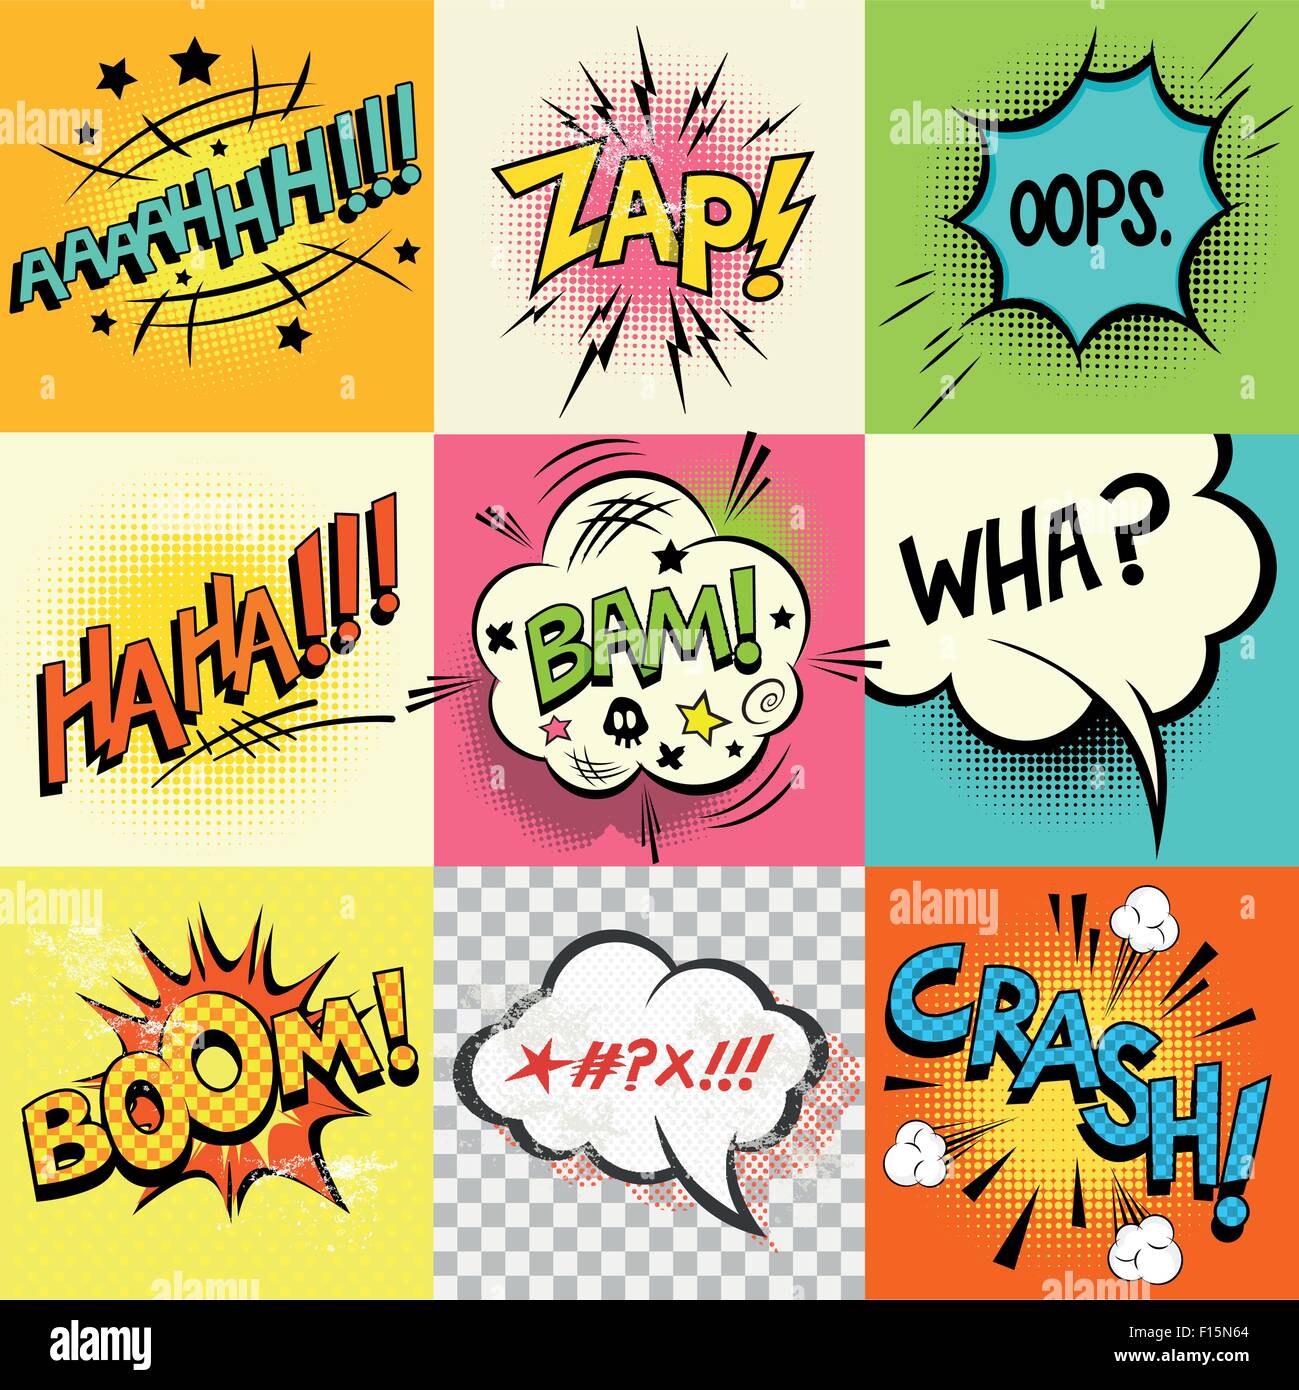 Comic-Buch Ausdrücke! Eine Reihe von Comic-Buch-Sprechblasen und Ausdruck Worte. Vektor-illustration Stock Vektor